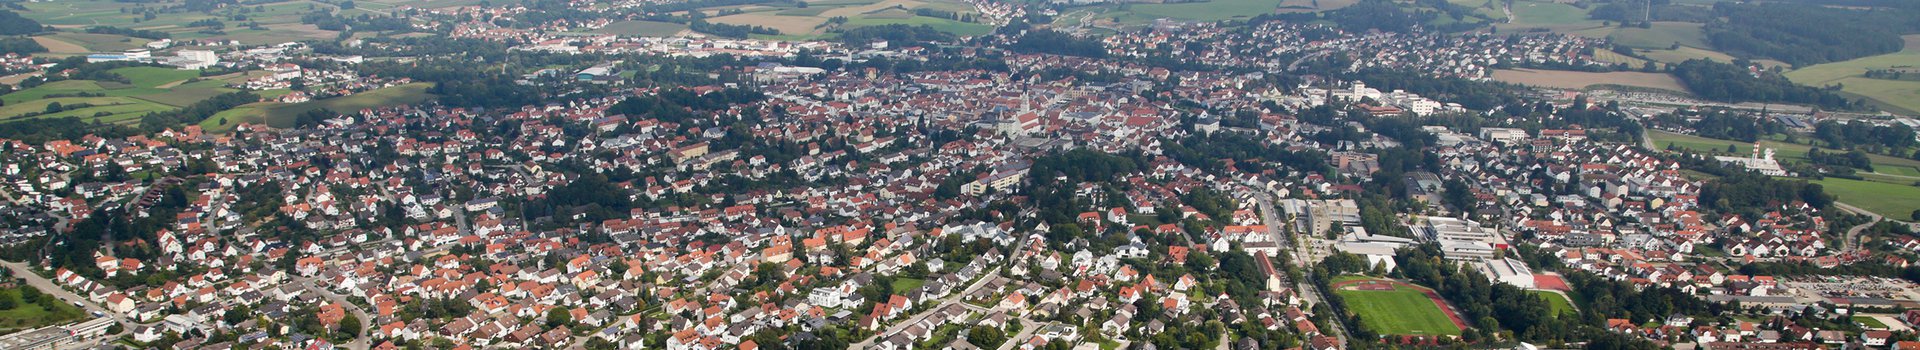 Luftbild von der Stadt Pfaffenhofen